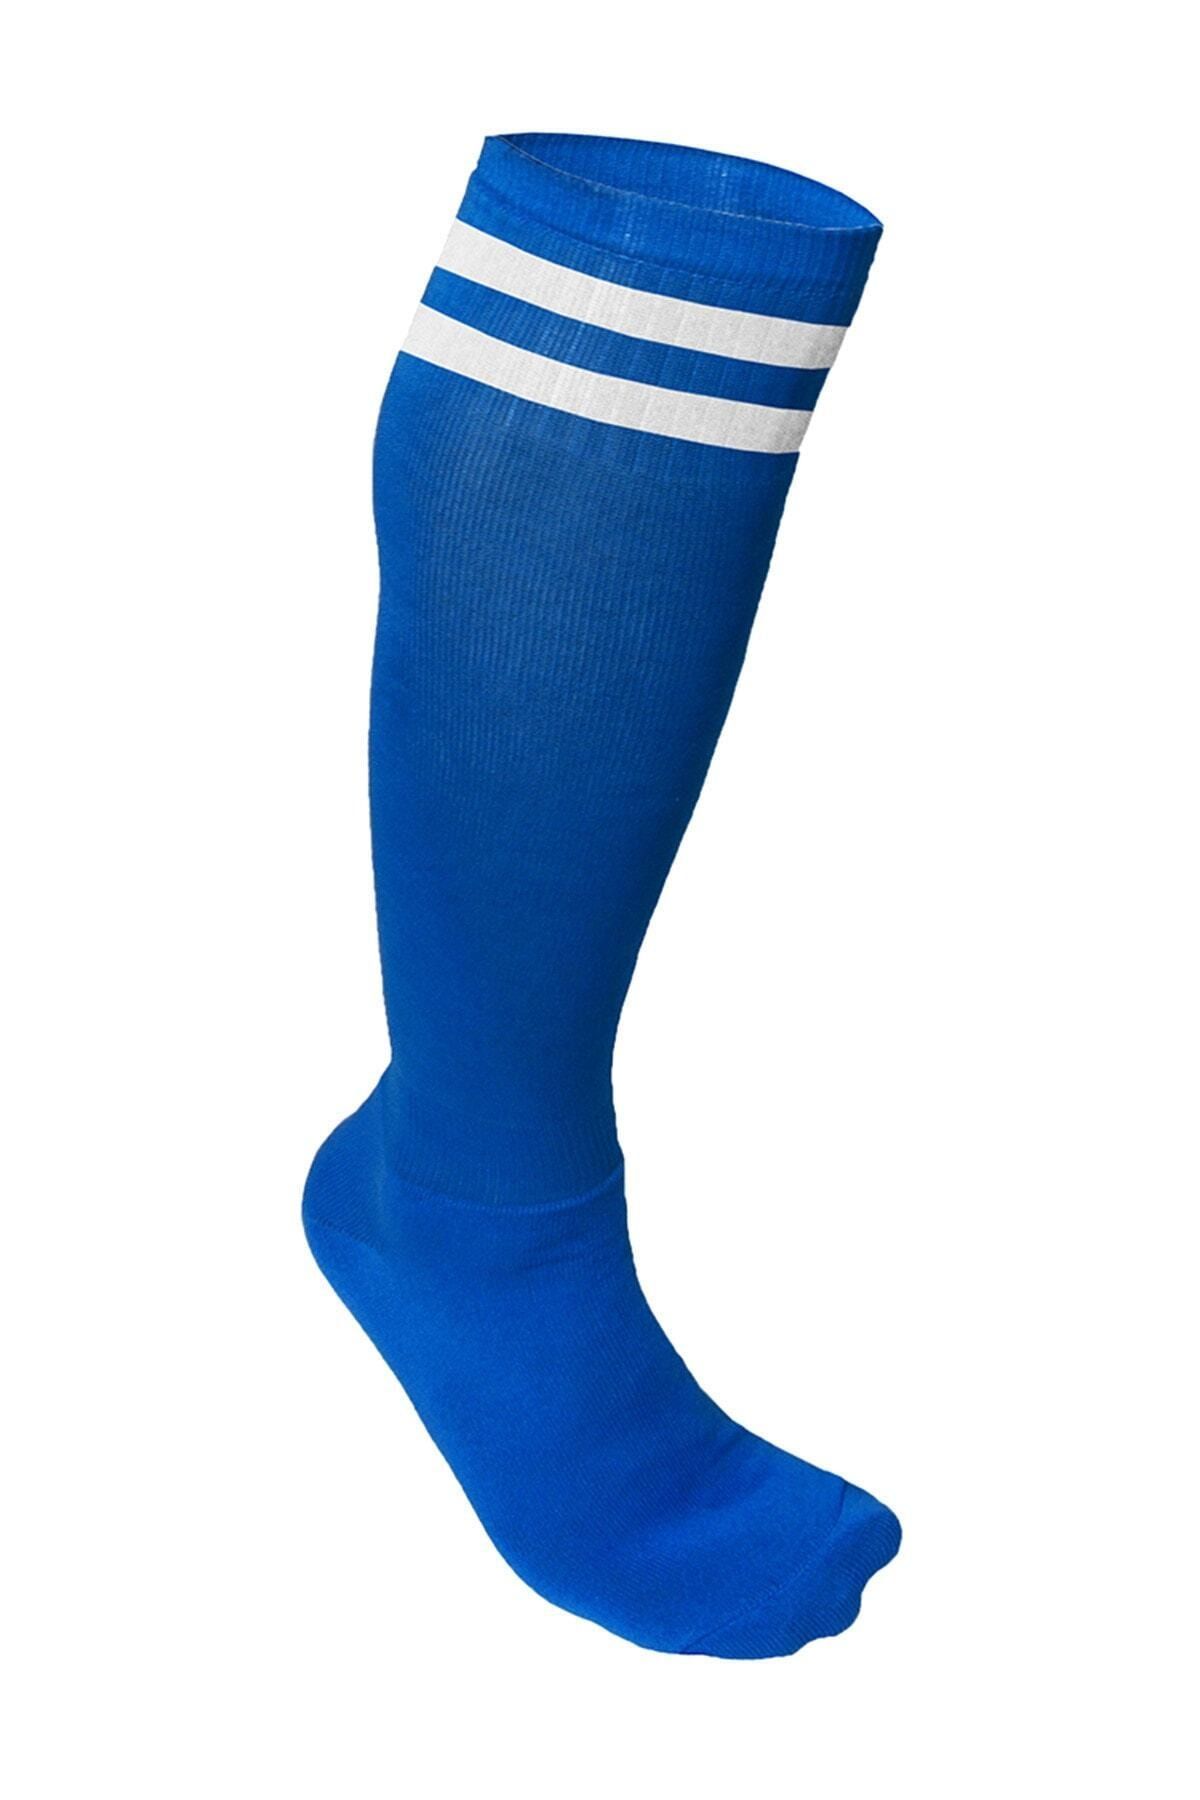 Spor724 Süper Futbol Tozluğu-Çorabı Mavi Beyaz - 36853